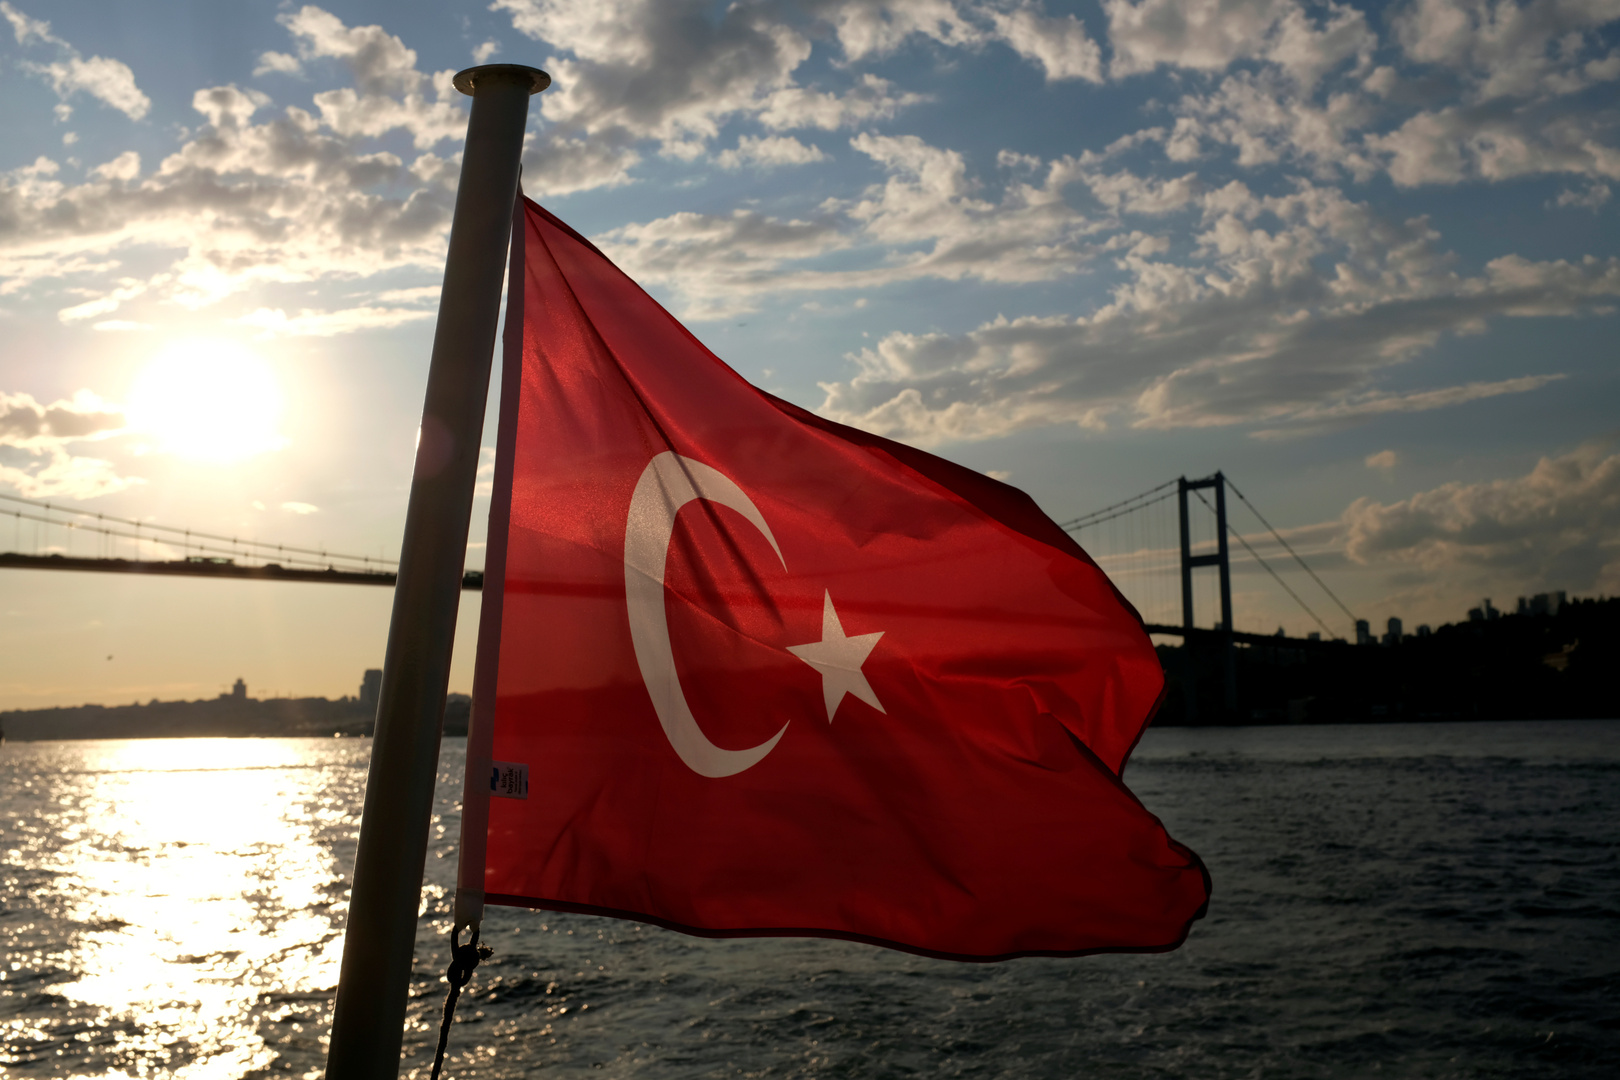 قنصل لبنان في تركيا يحذر من خطر مافيات تستغل لبنانيين لتهريبهم الى أوروبا